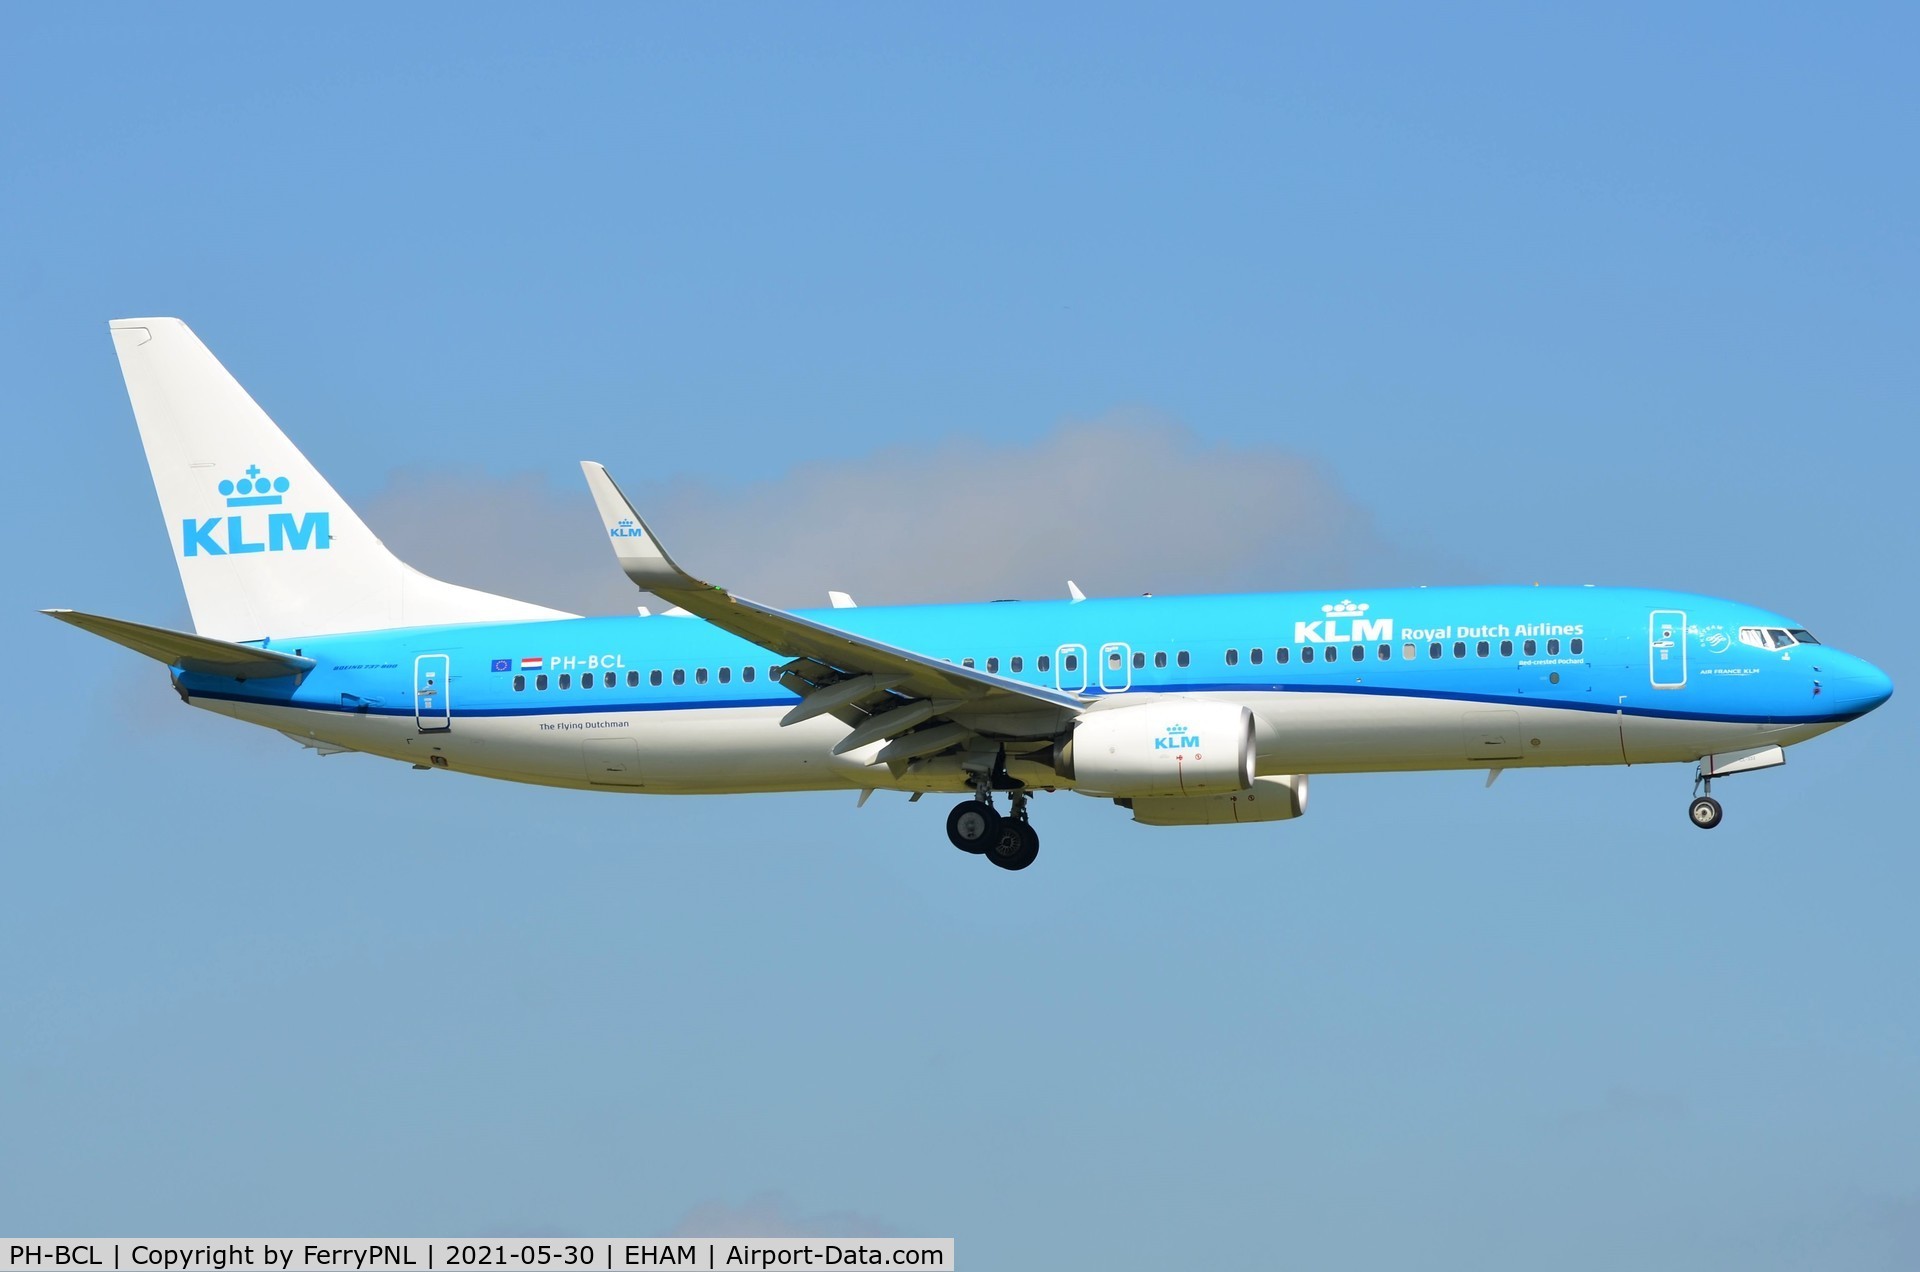 PH-BCL, 2019 Boeing 737-800 C/N 63624, KLM B738 landing at its base